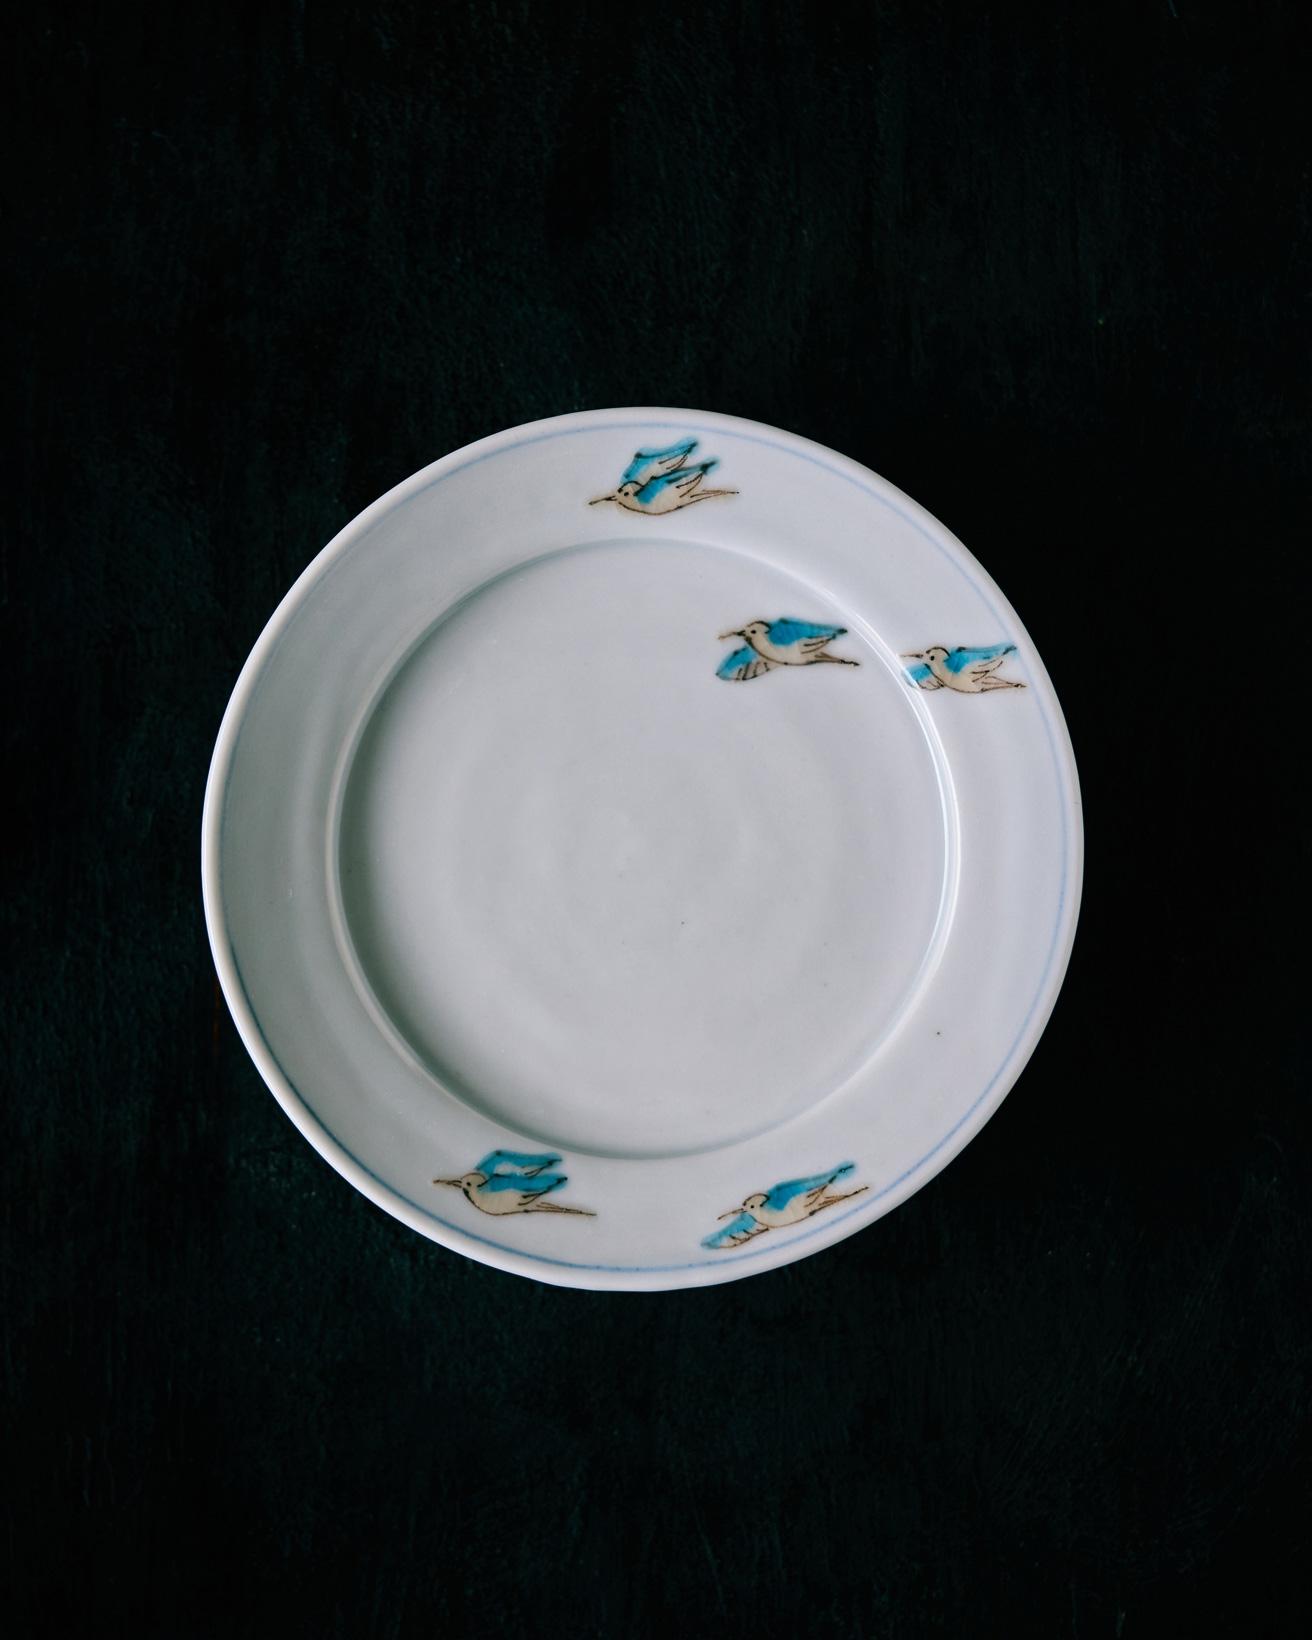 青い鳥が描かれたやさしい雰囲気の色絵の器。少し遊びがあっていいなと思い、最近購入しました。何枚か持っていますが、1枚ずつ柄や色味が異なるのも手描きならではの味わい。中華料理の小皿などによく使っています。